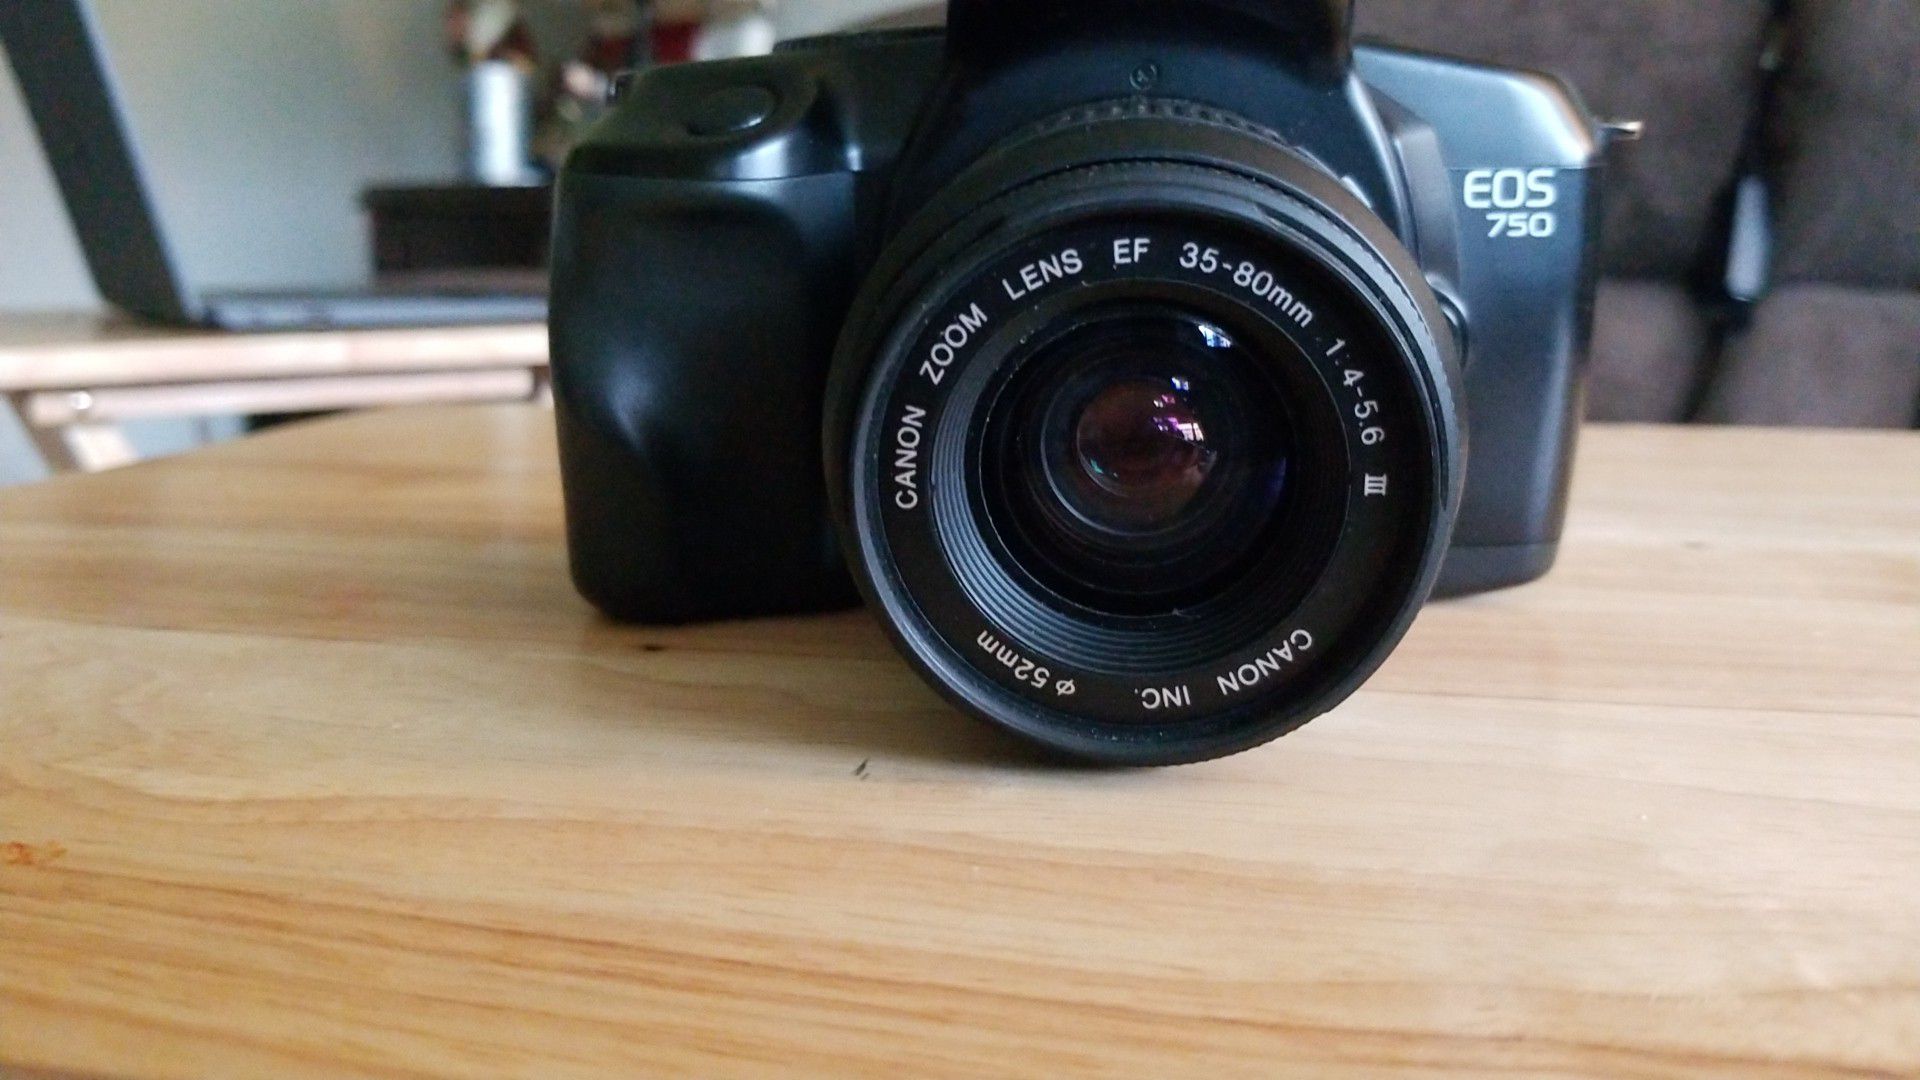 Canon eos 750 35mm camera